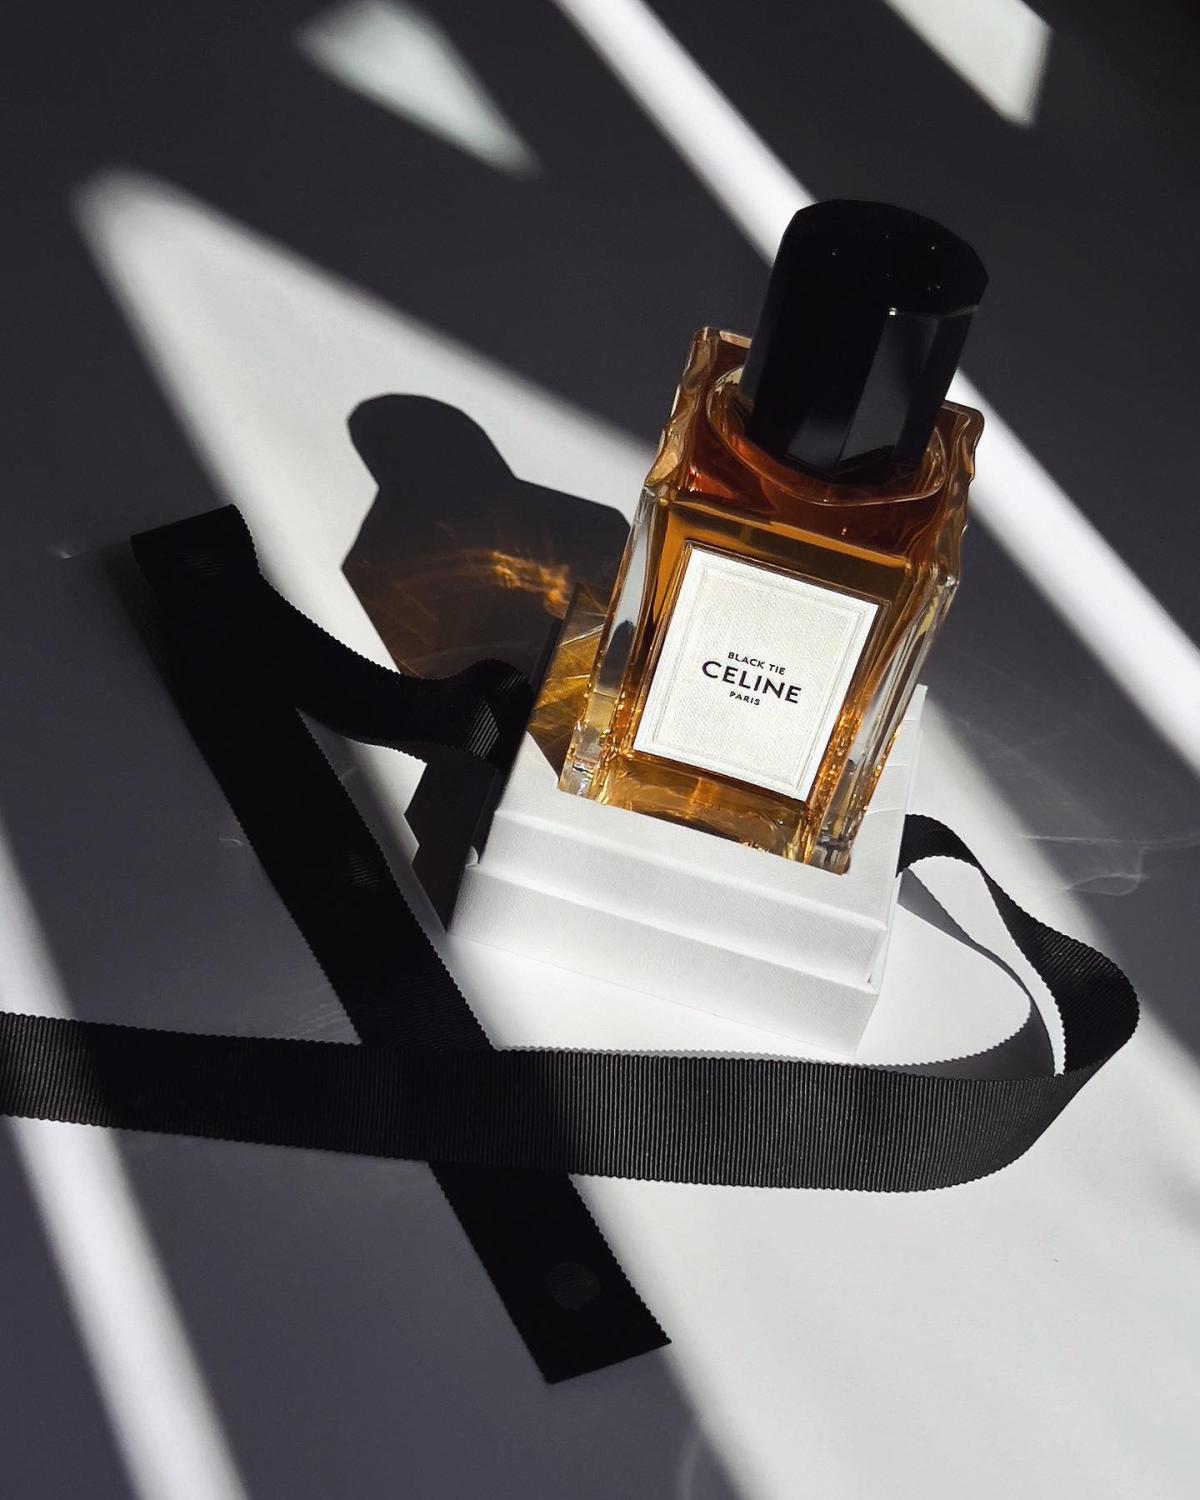 Black Tie Celine parfum - un parfum pour homme et femme 2019